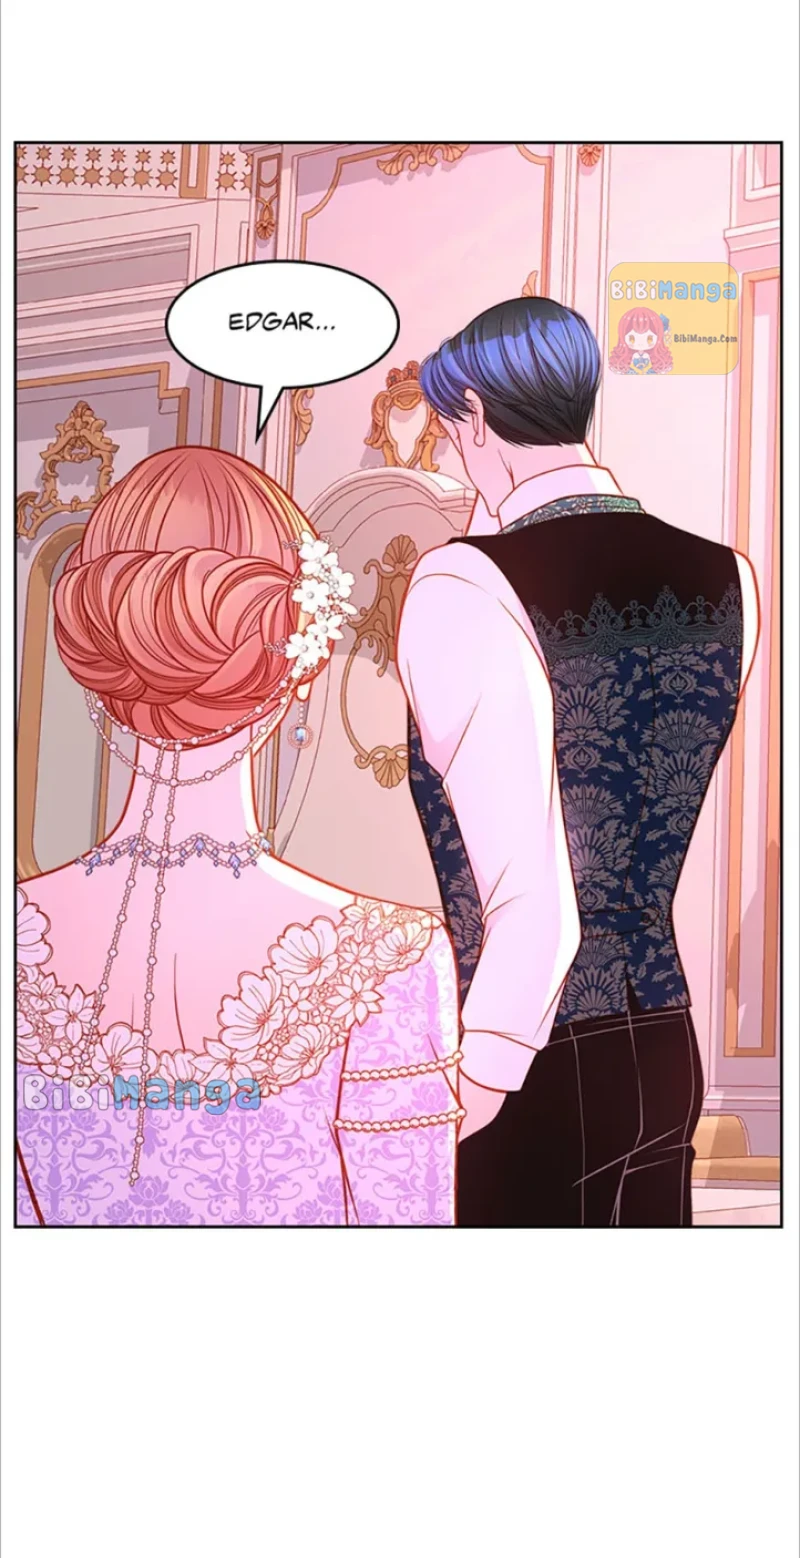 The Duchess’s Secret Dressing Room chapter 49